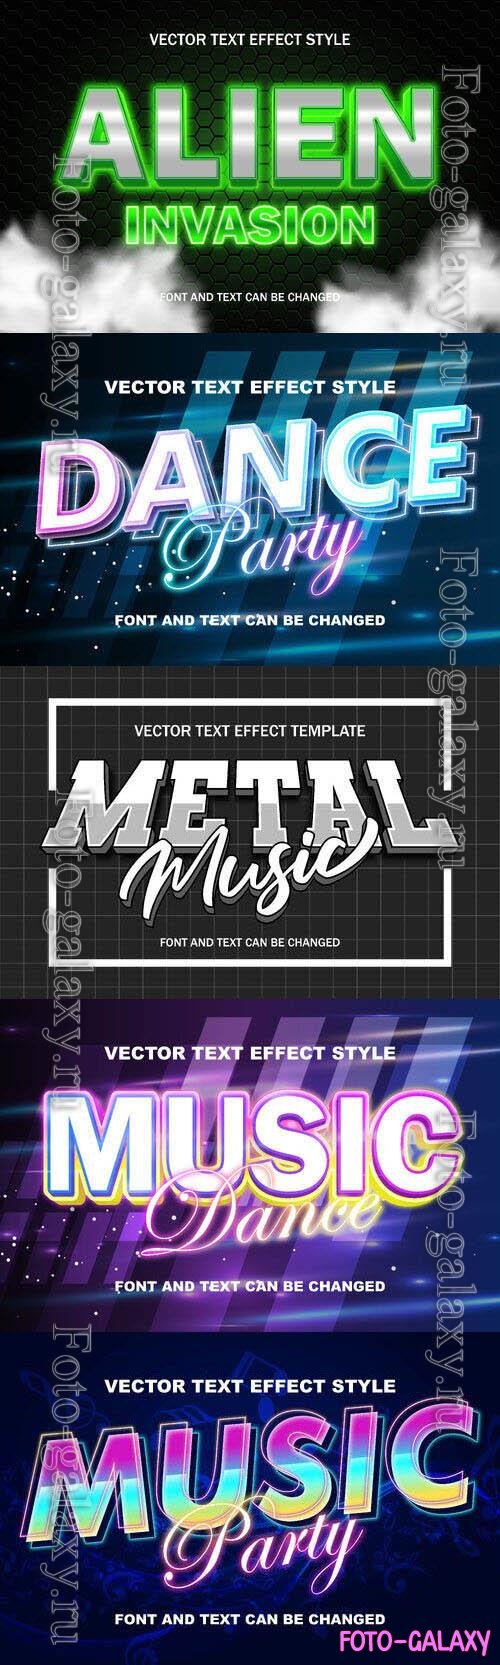 Vector 3d text editable, text effect font design
 set vol 70 